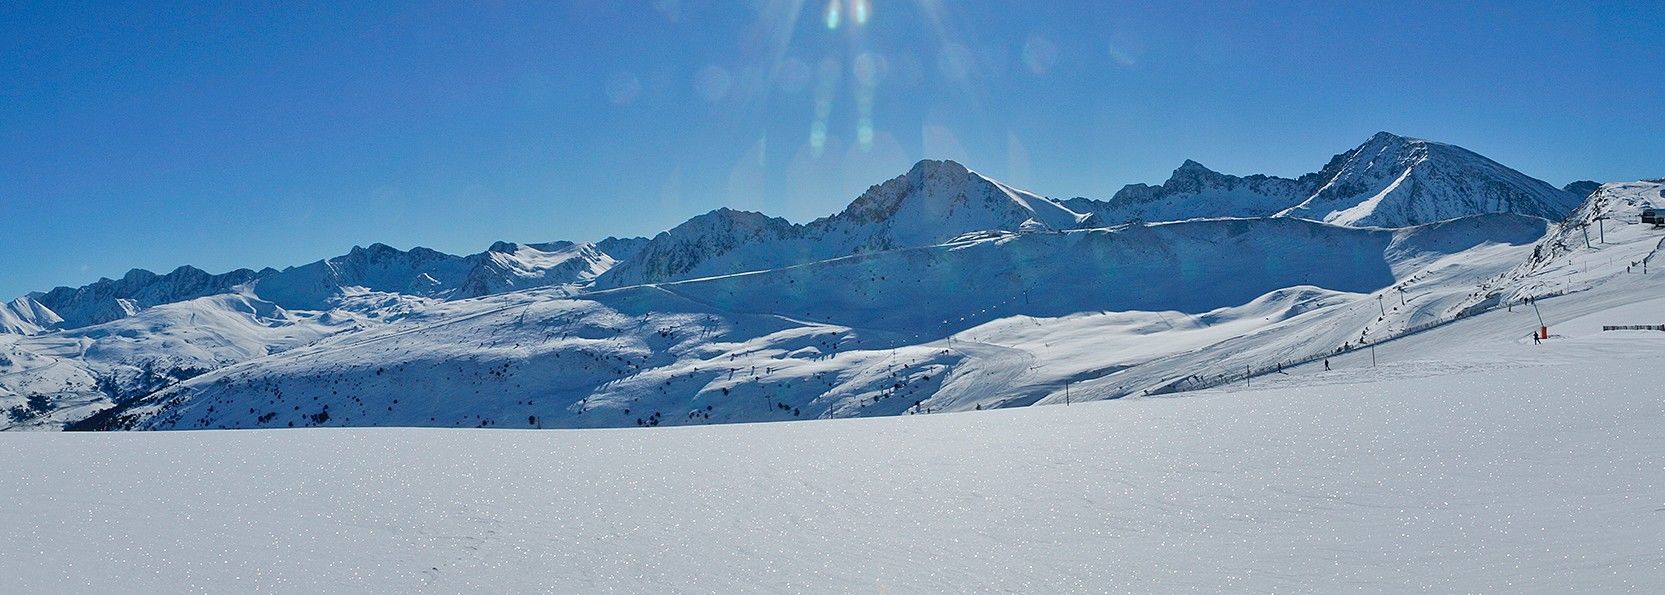 Estación de Esqui Grandvalira - GrandValira Ski